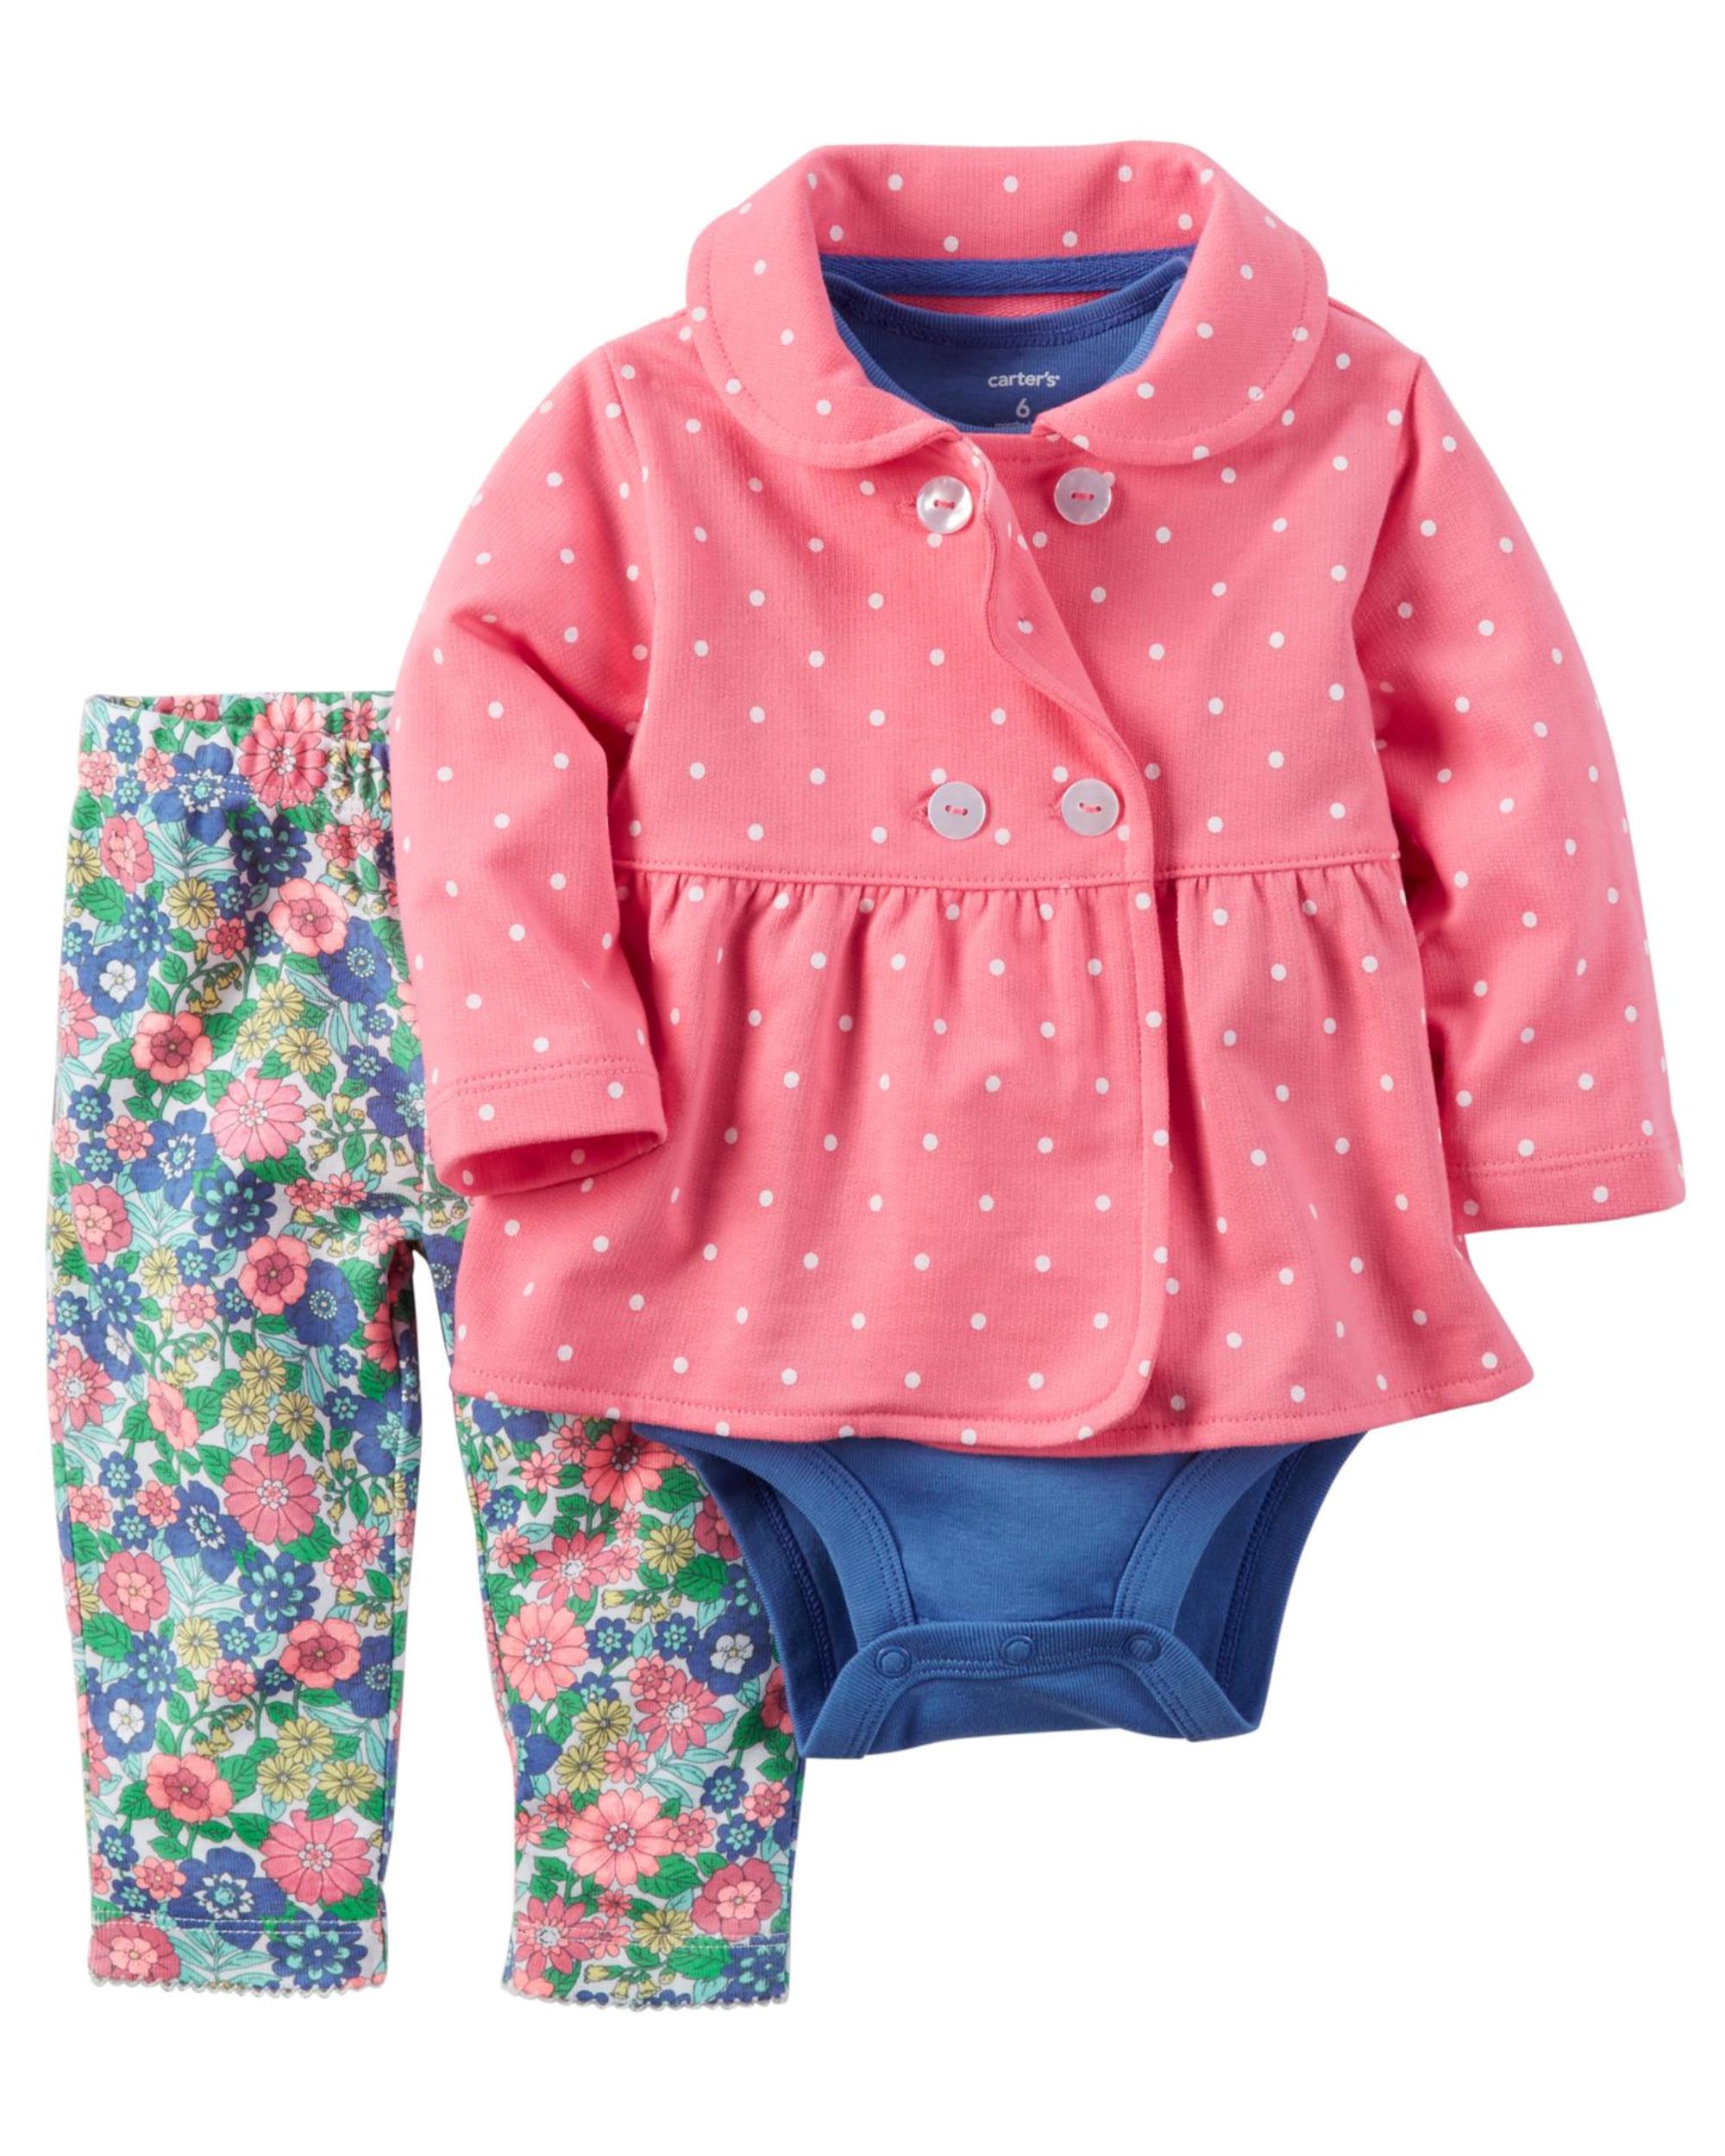 Carter's Newborn & Infant Girls' Jacket, Bodysuit & Pants - Polka Dot & Floral